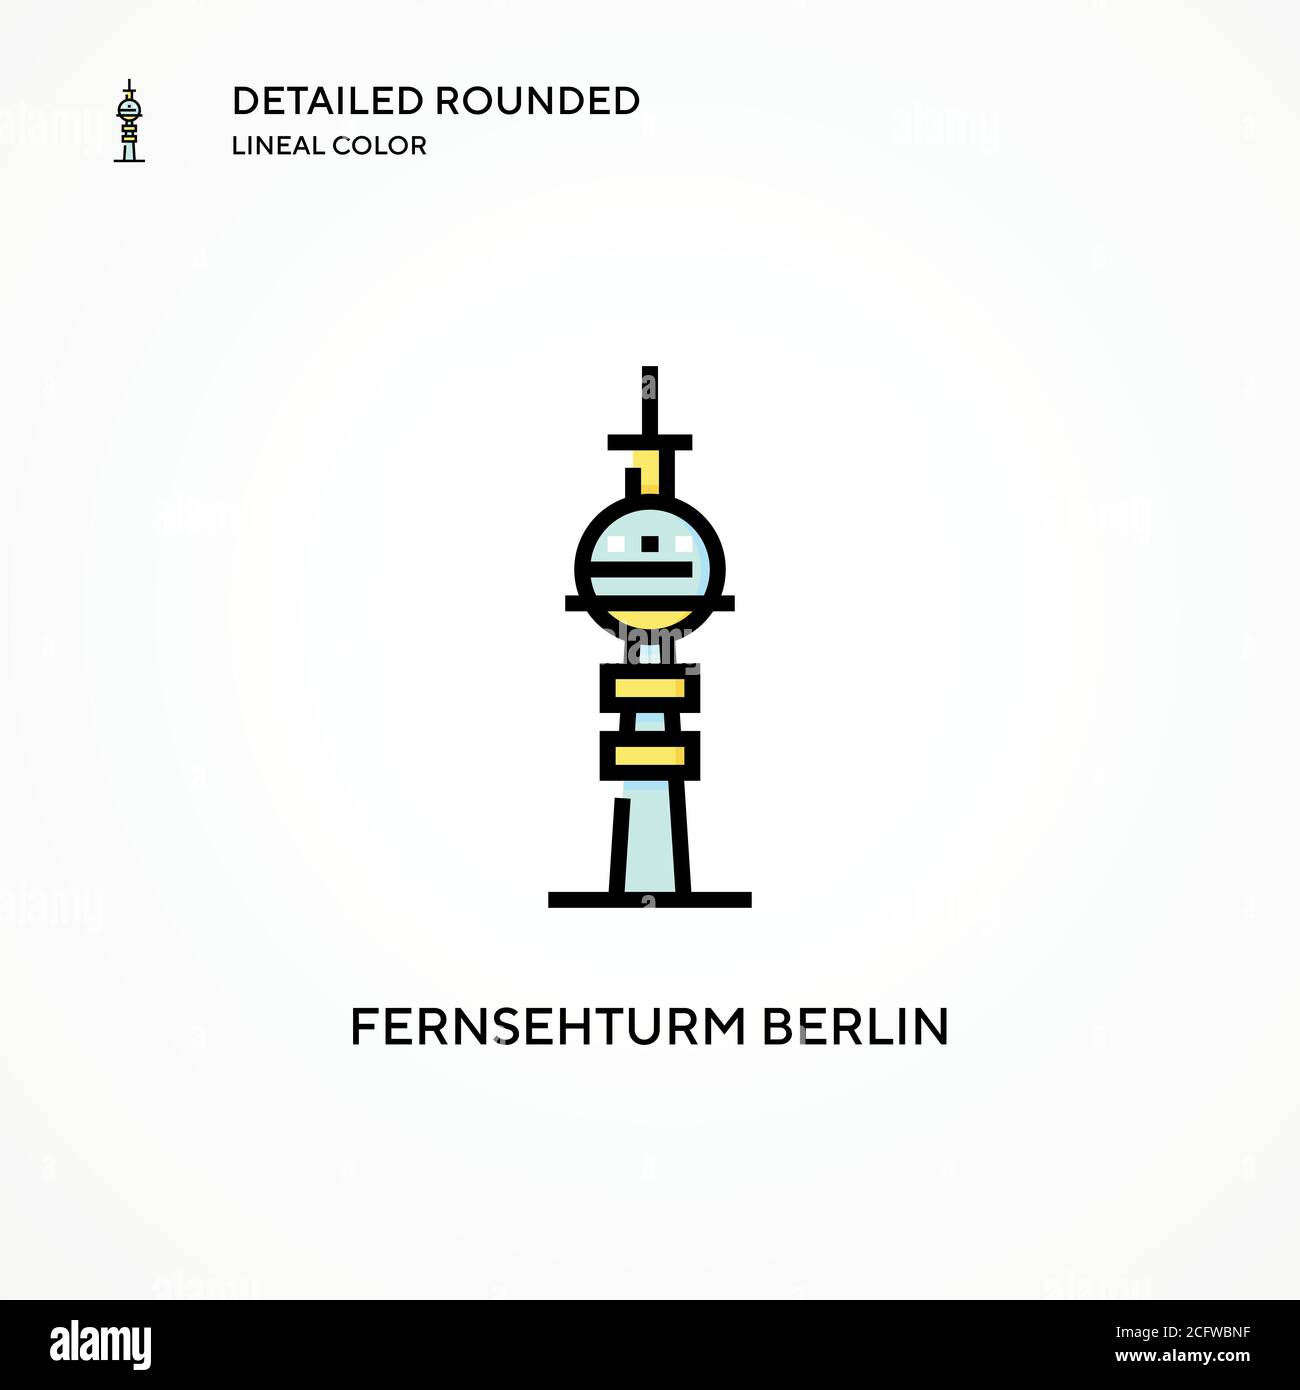 Fernsehturm berlin vecteur icône. Concepts modernes d'illustration vectorielle. Facile à modifier et à personnaliser. Illustration de Vecteur